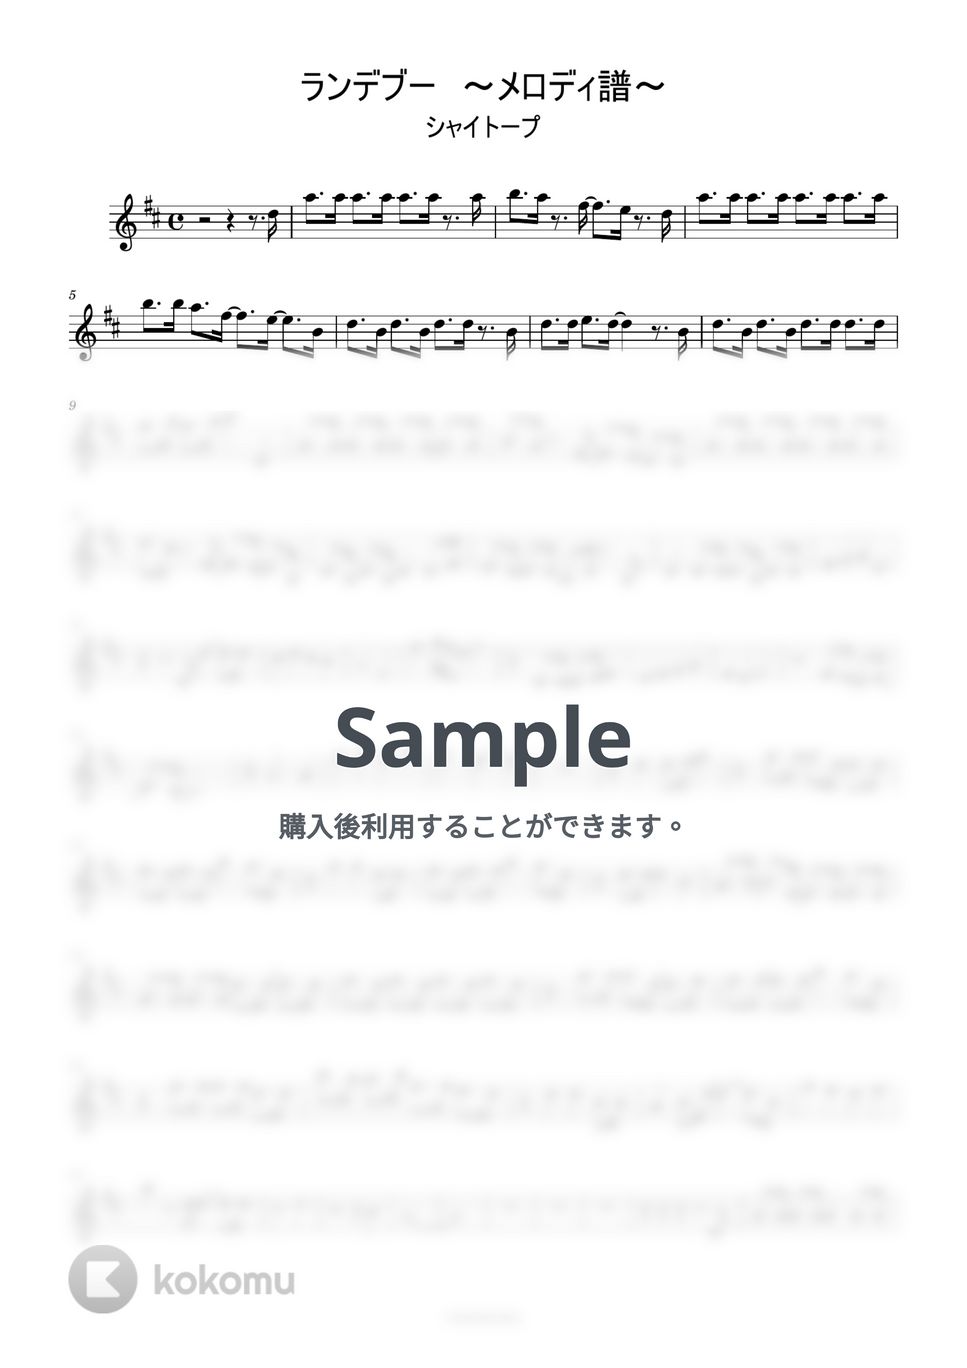 シャイトープ - ランデヴー/シャイトープ (ピアノ/C管楽器対応/メロディ譜/ティックトック) by utamenma